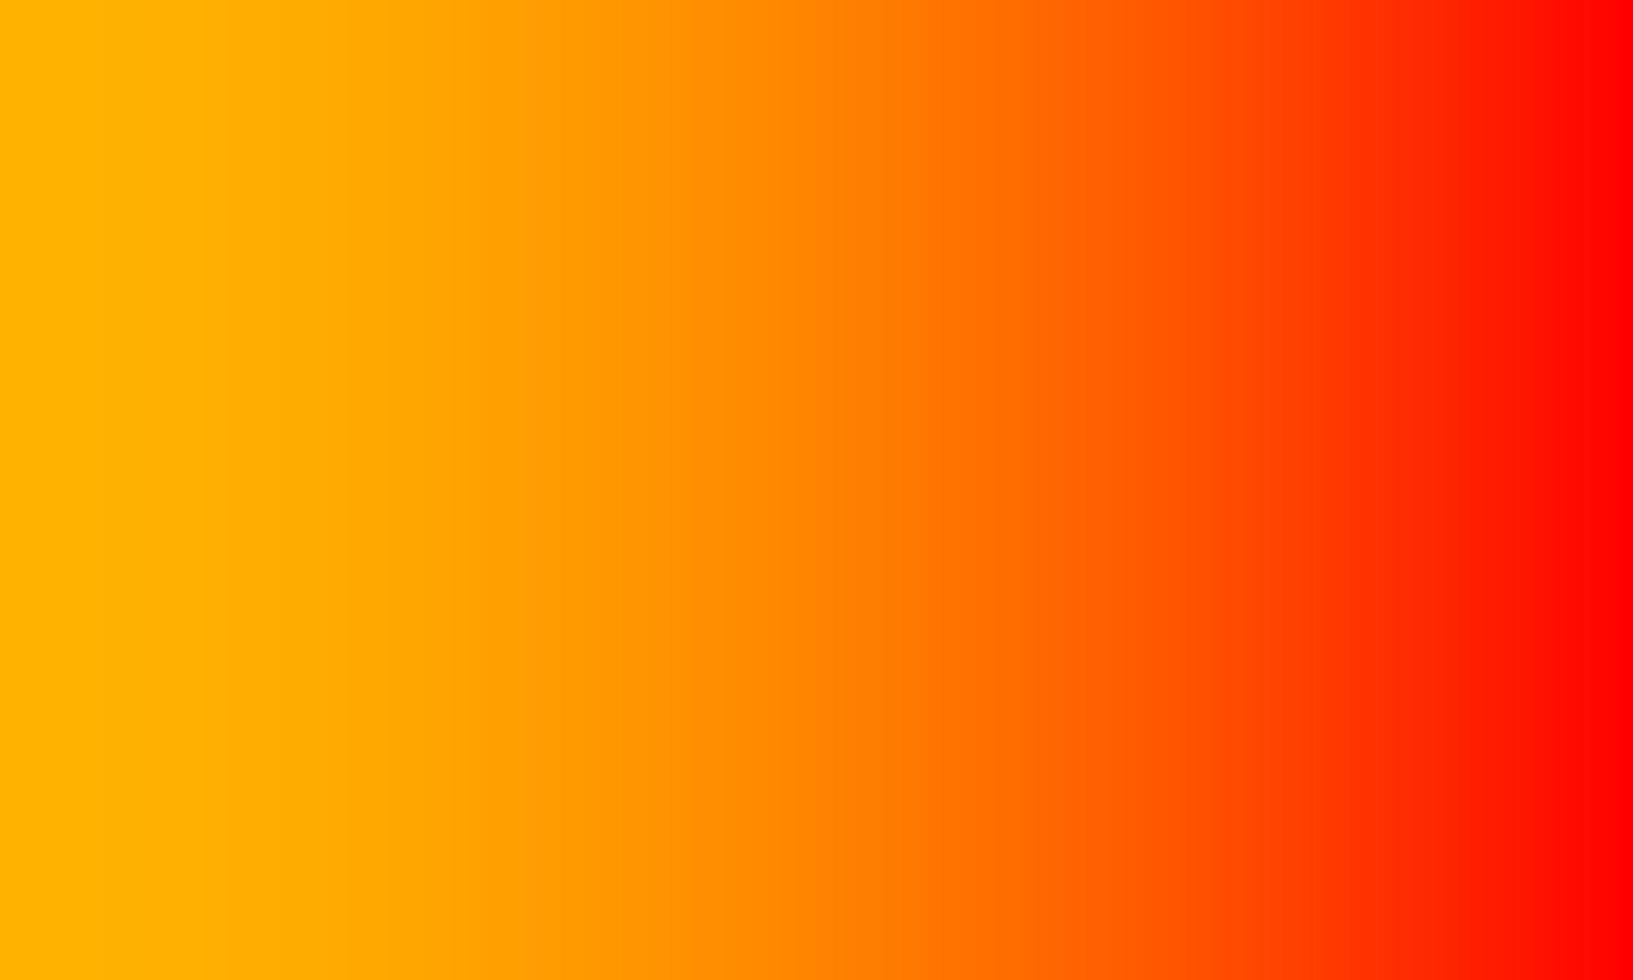 Hintergrund mit Farbverlauf. orange und rot. abstrakter, einfacher, fröhlicher und sauberer Stil. geeignet für kopierraum, tapete, hintergrund, banner, flyer oder dekor vektor